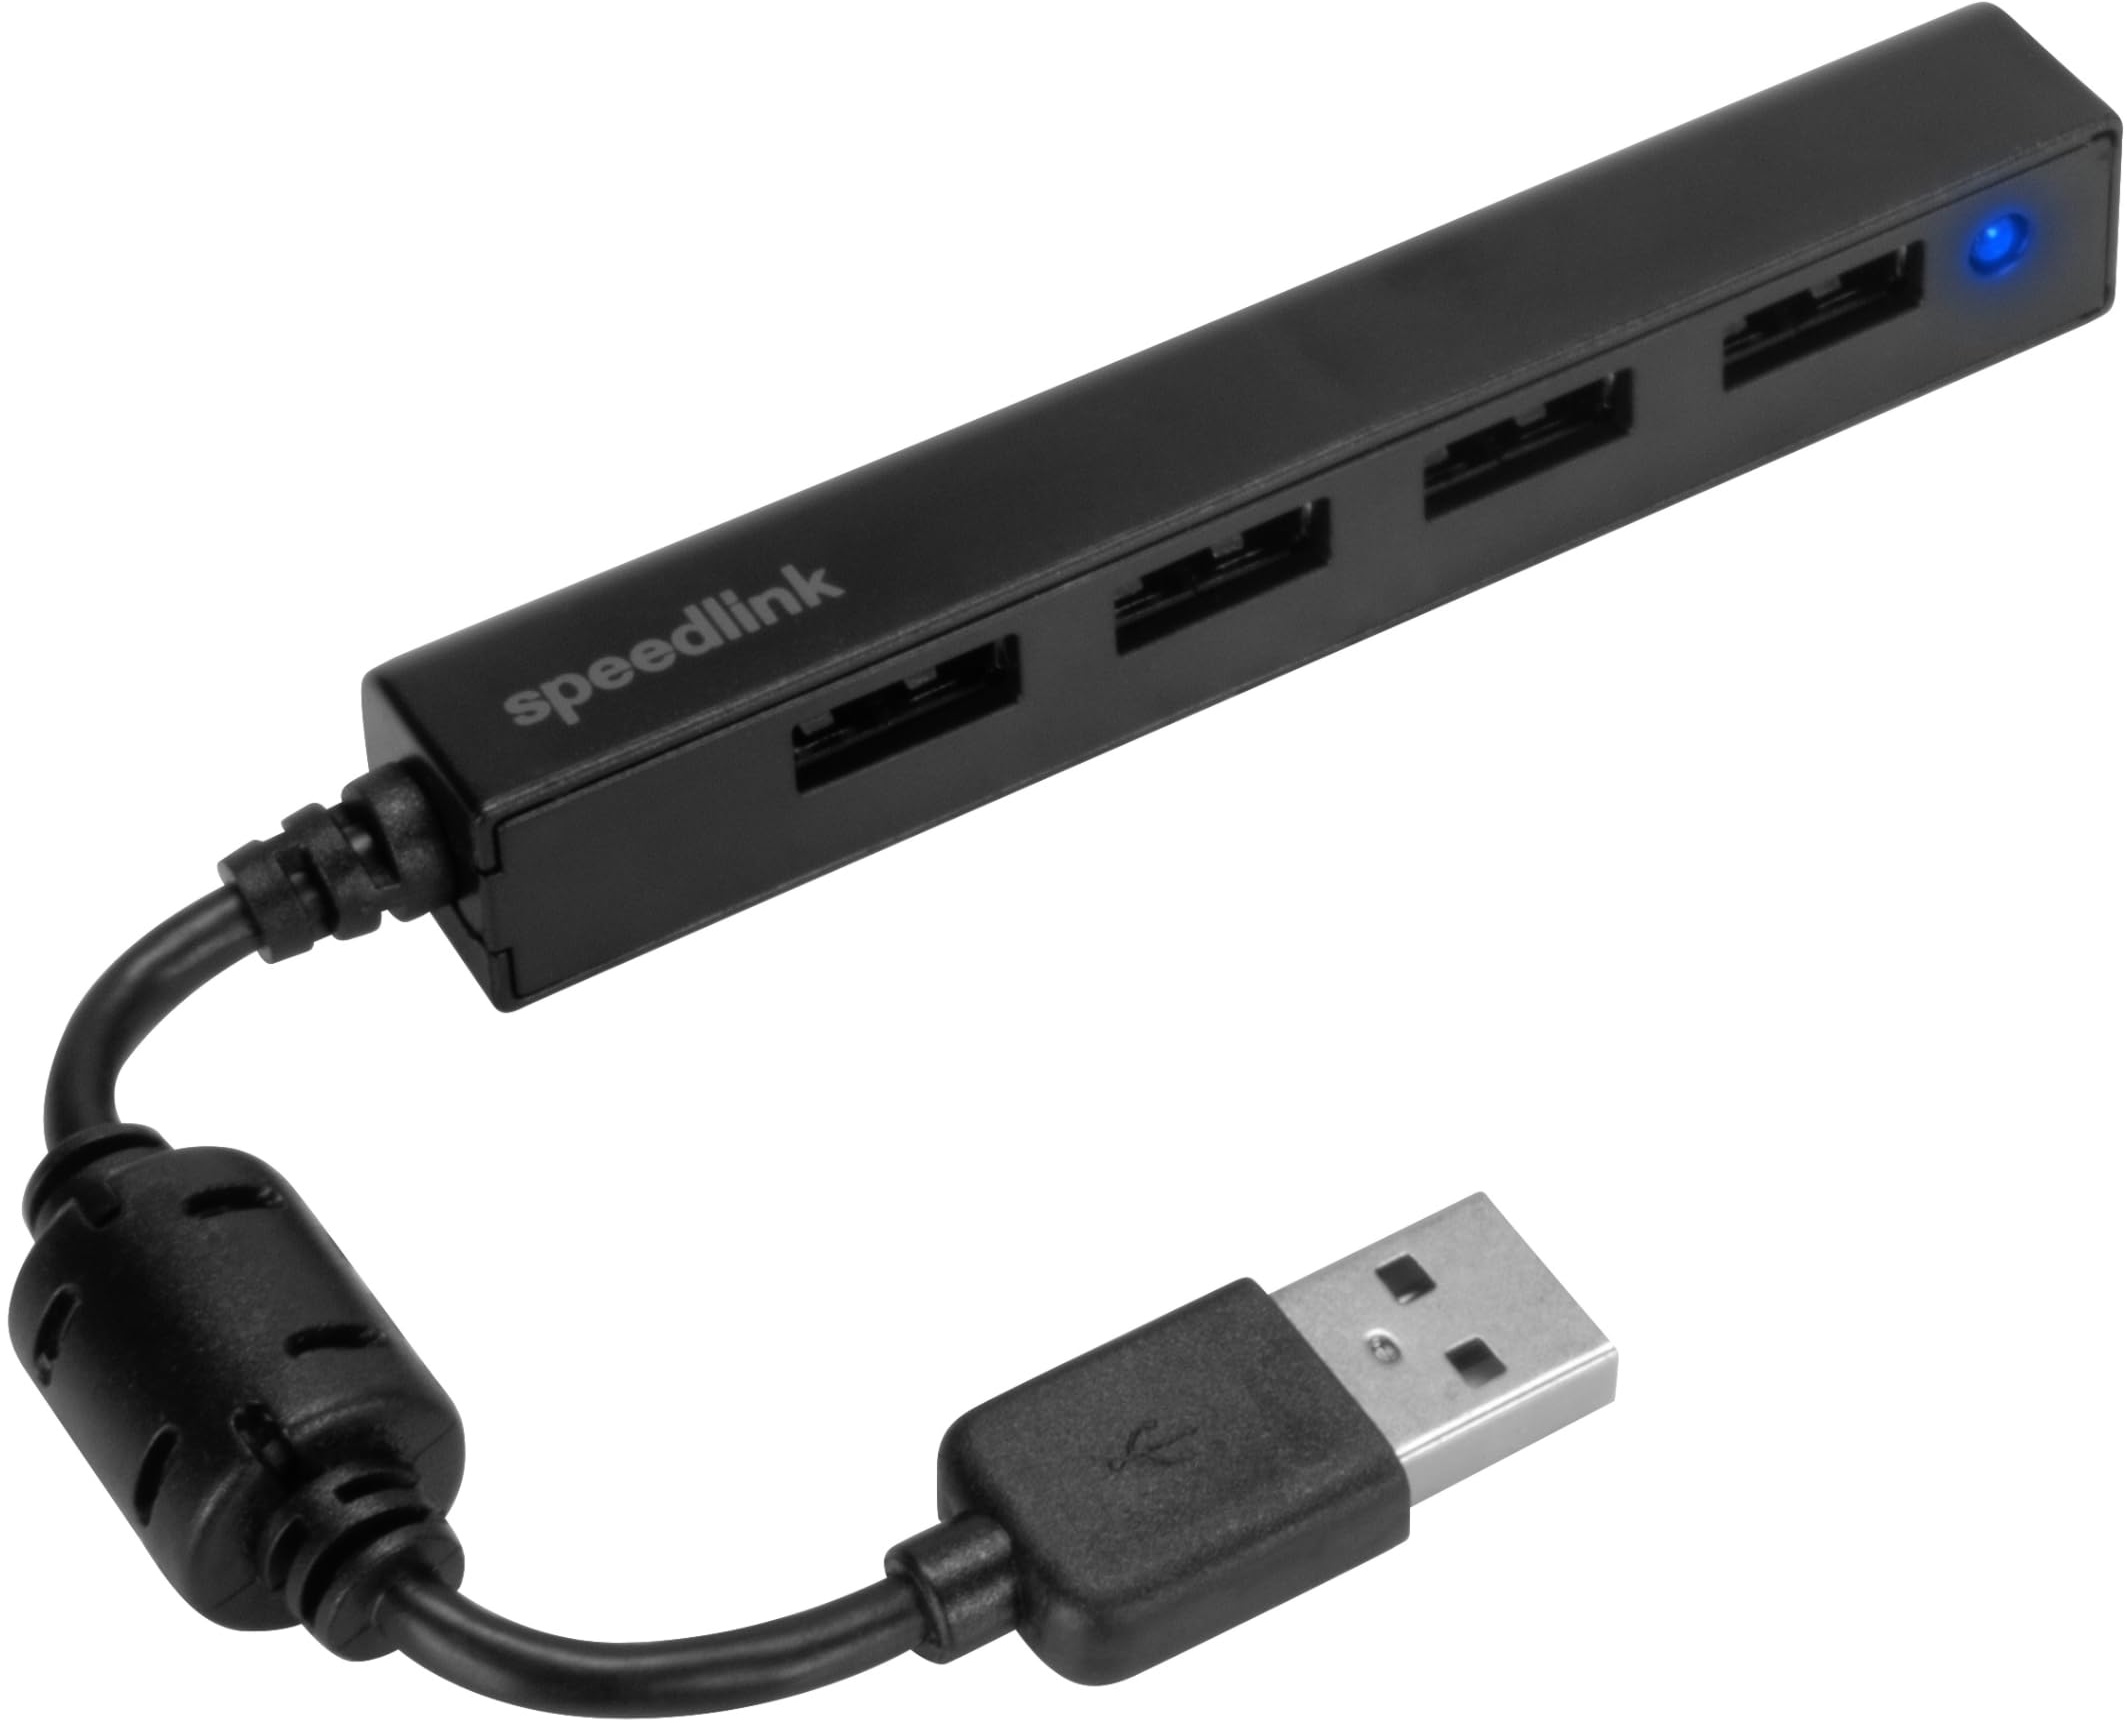 Speedlink SNAPPY Slim USB Hub - Passiver 4-Port Hub mit USB 2.0 - bis zu 480 Mbit/s, integrierter Stecker, treiberlose Installation, schwarz